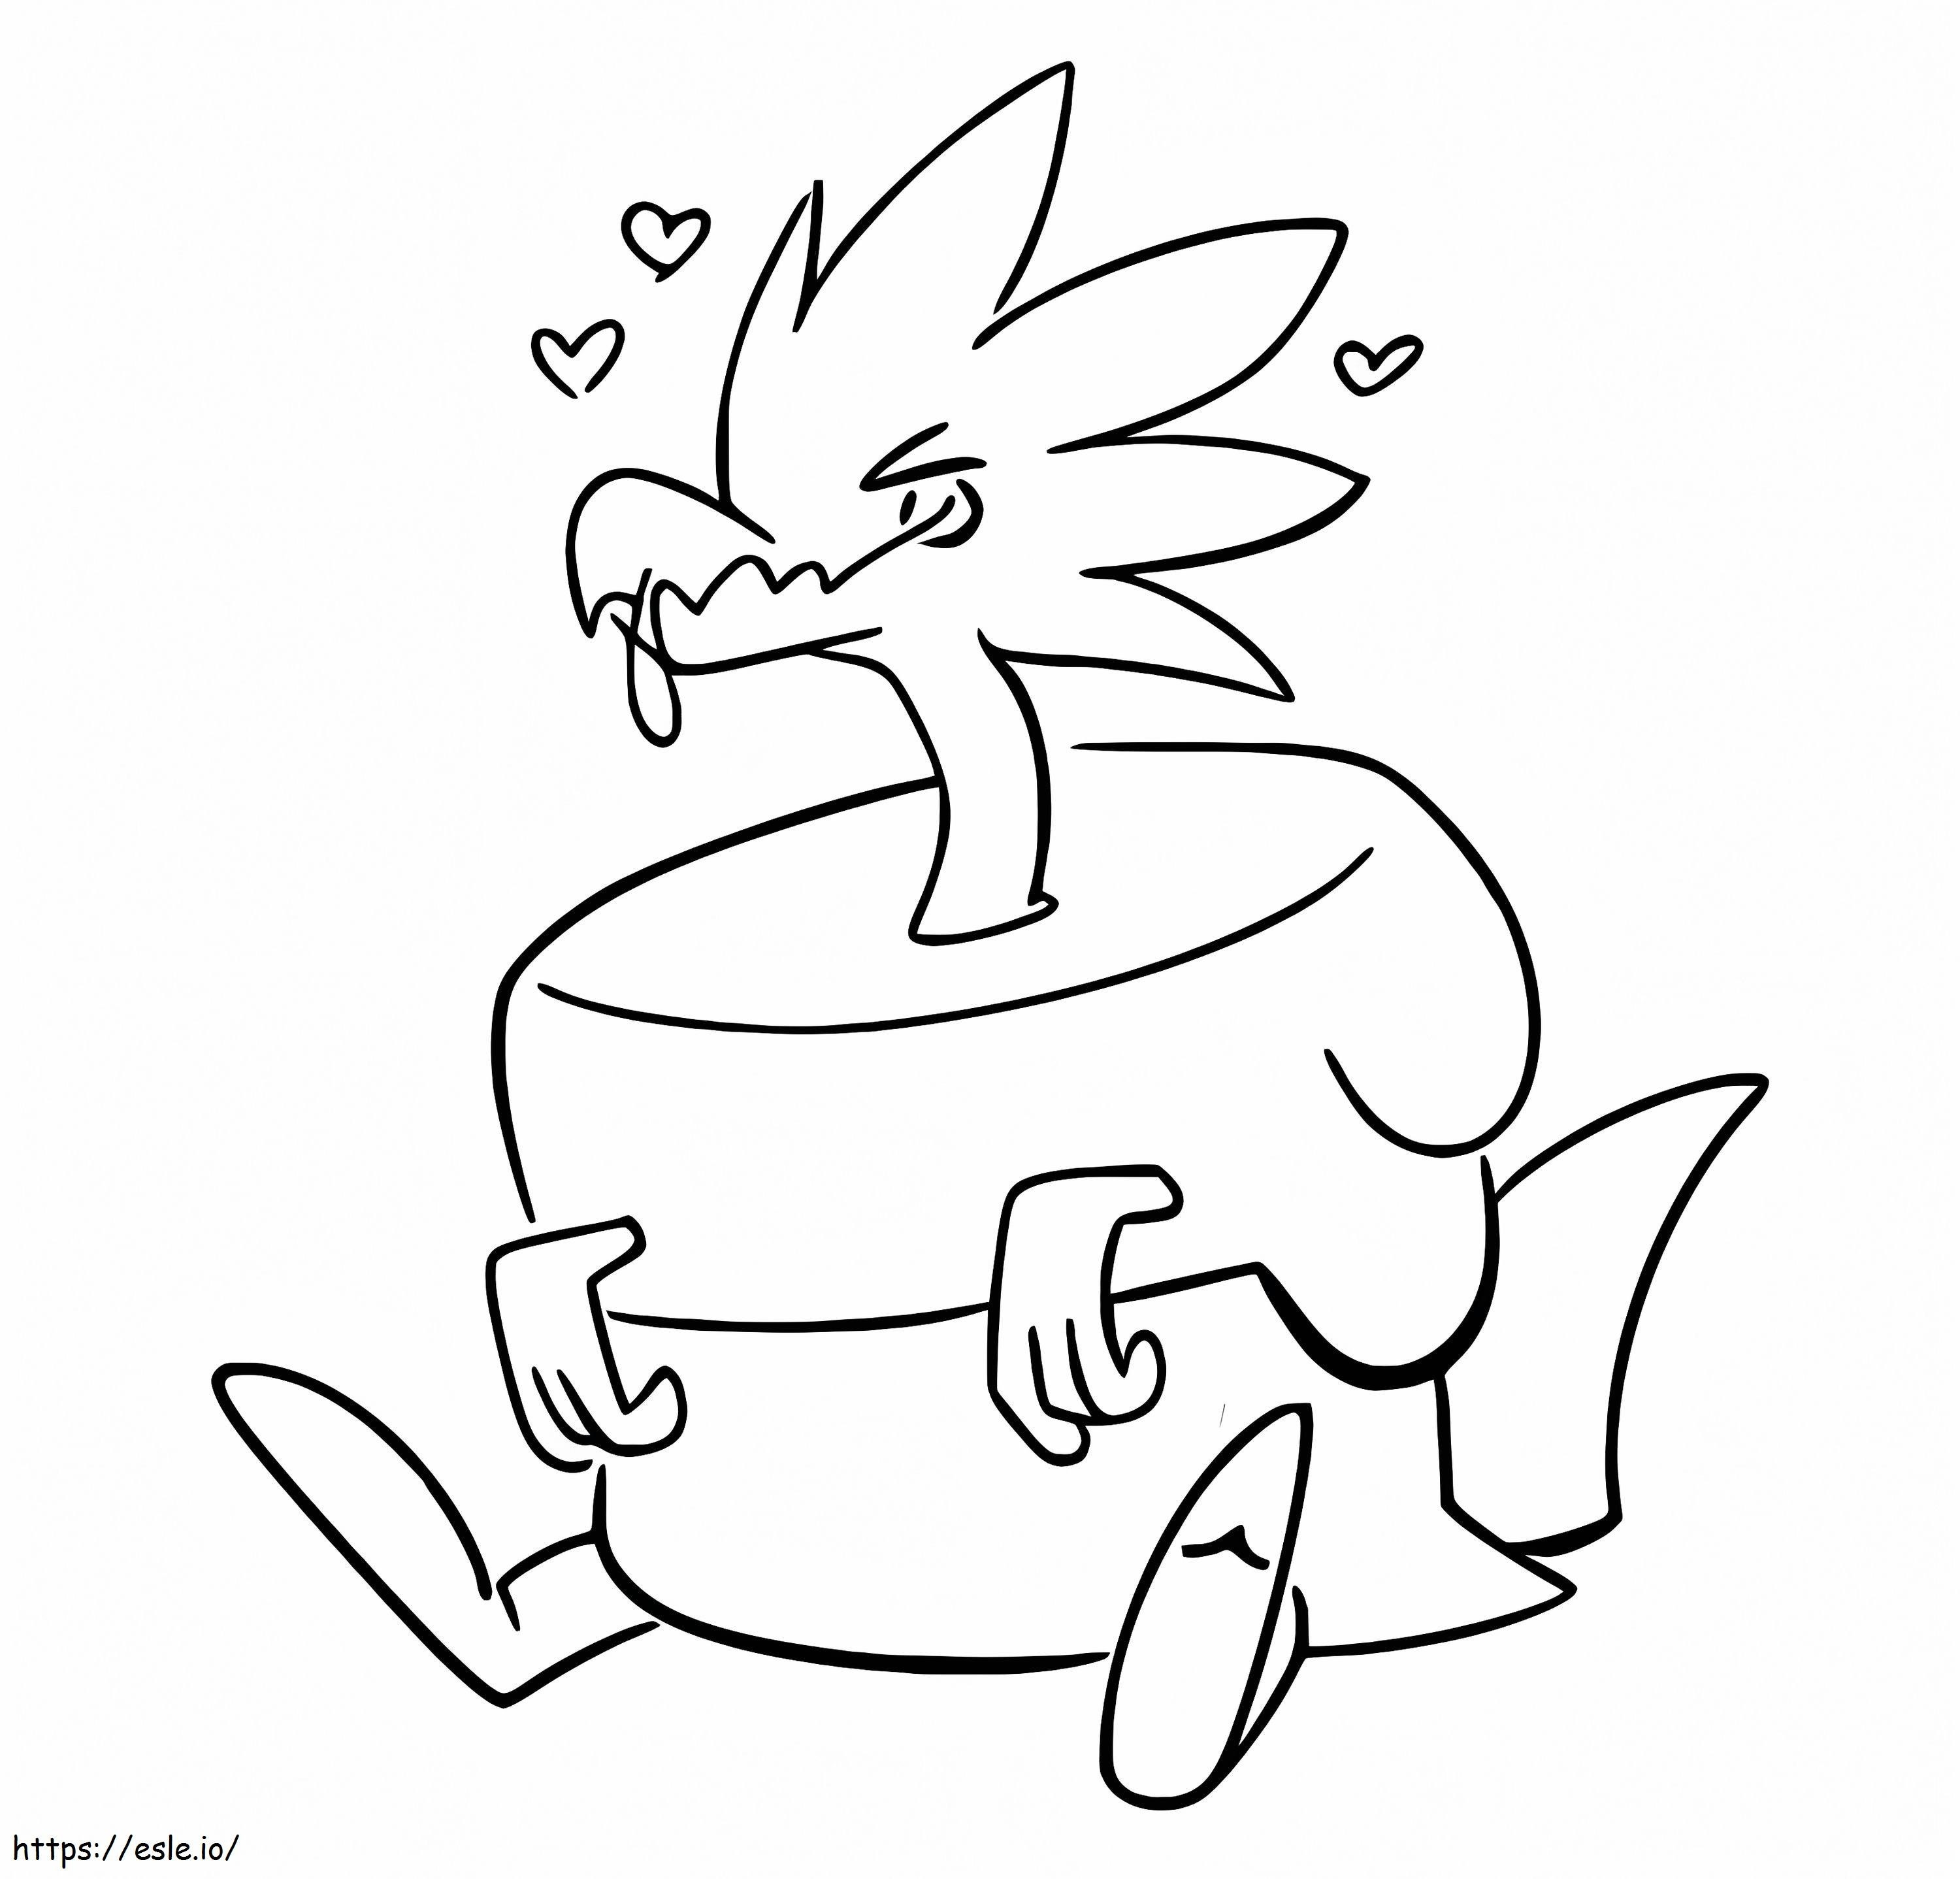 Coloriage Pokémon Arctozolt 2 à imprimer dessin